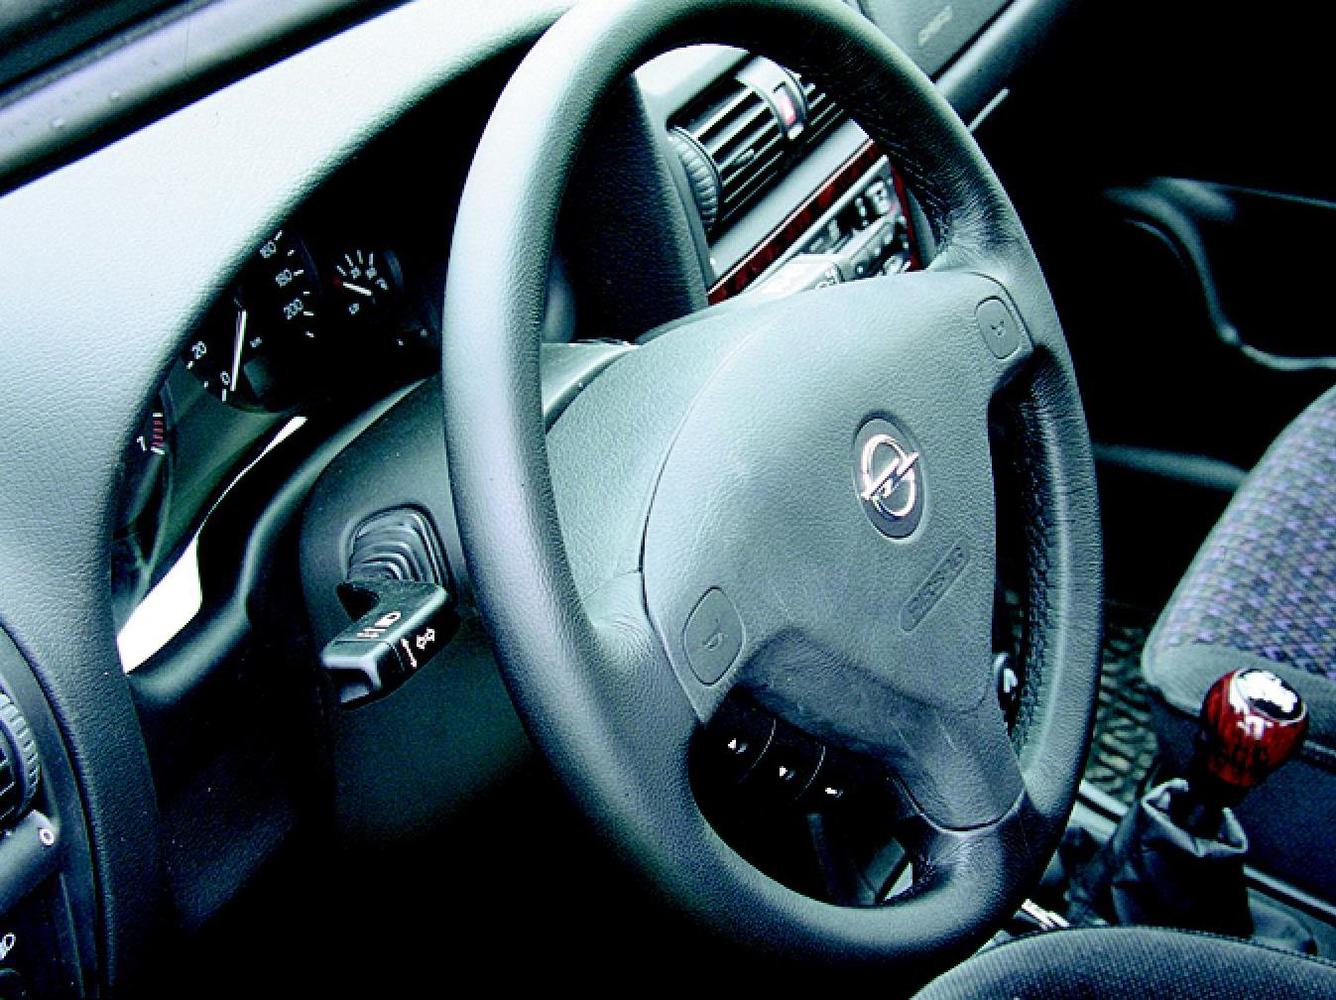 хэтчбек 5 дв. Opel Astra 1998 - 2004г выпуска модификация 1.2 AT (75 л.с.)